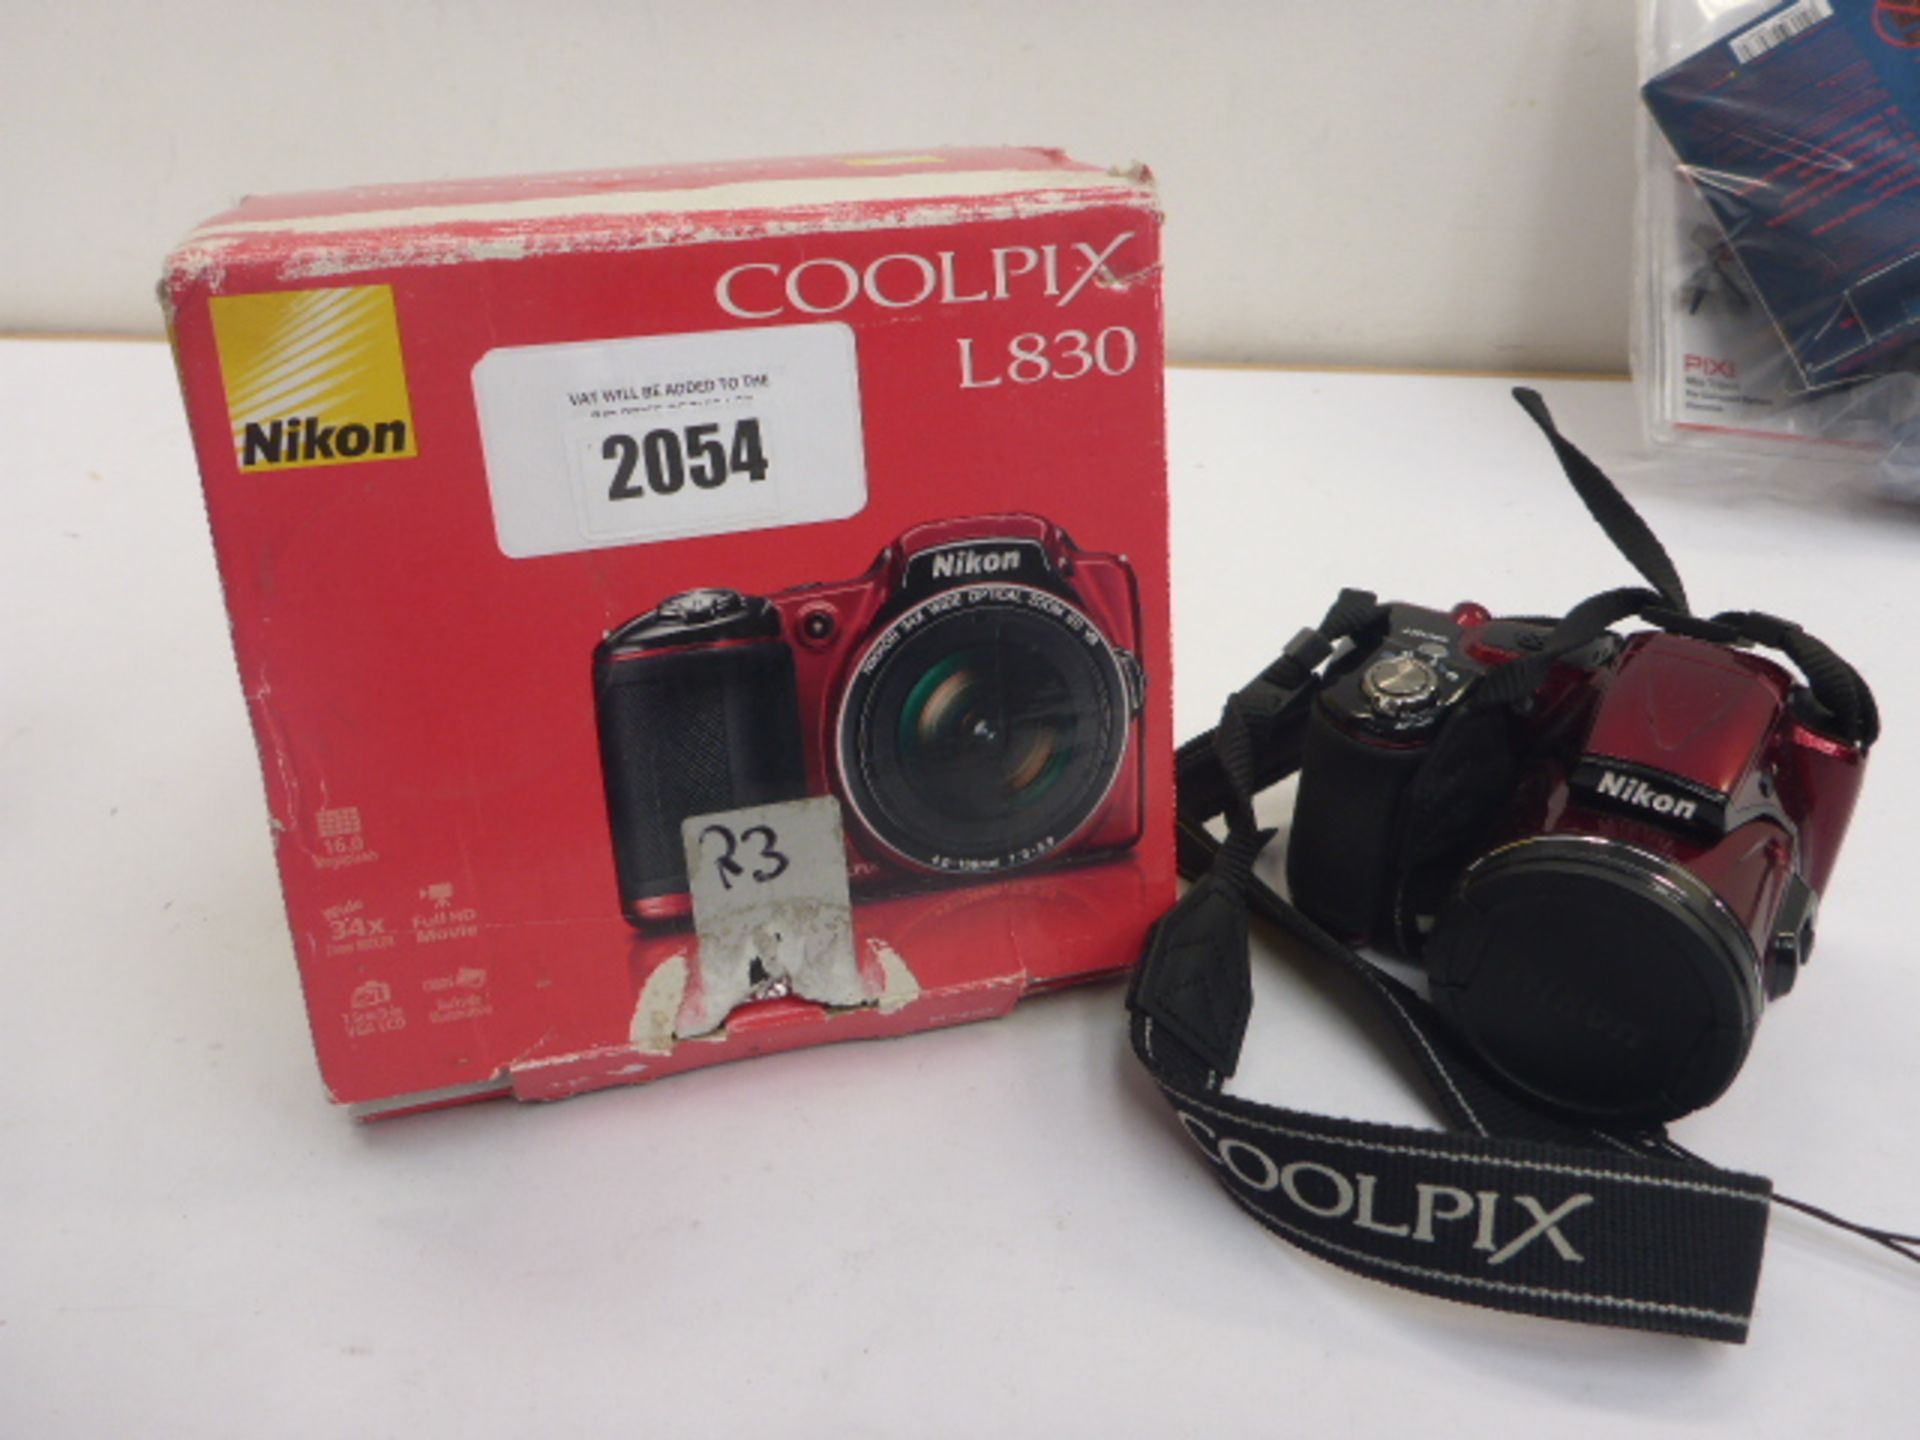 Nikon Coolpix L830 digital camera